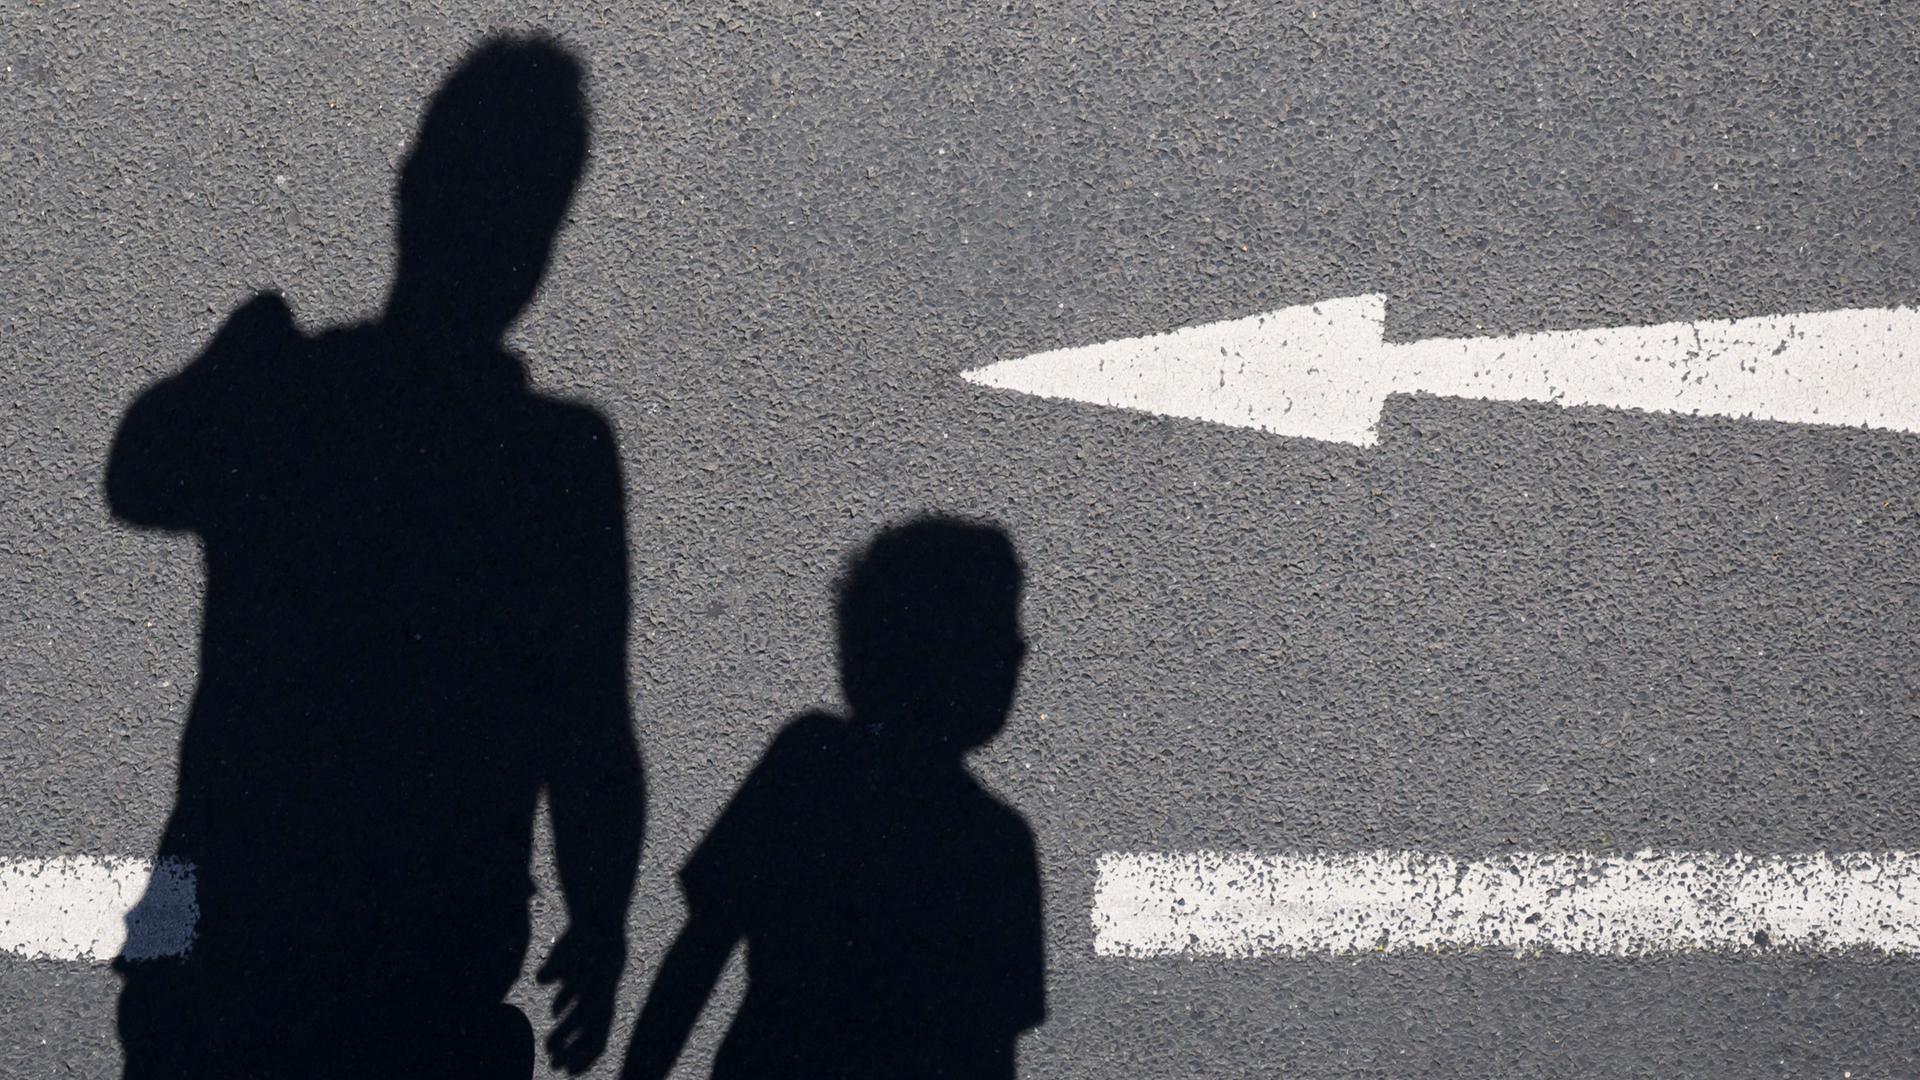 Der Schatten von einem Mann und einem Kind sind auf einer Straße mit einem Pfeil zu sehen.